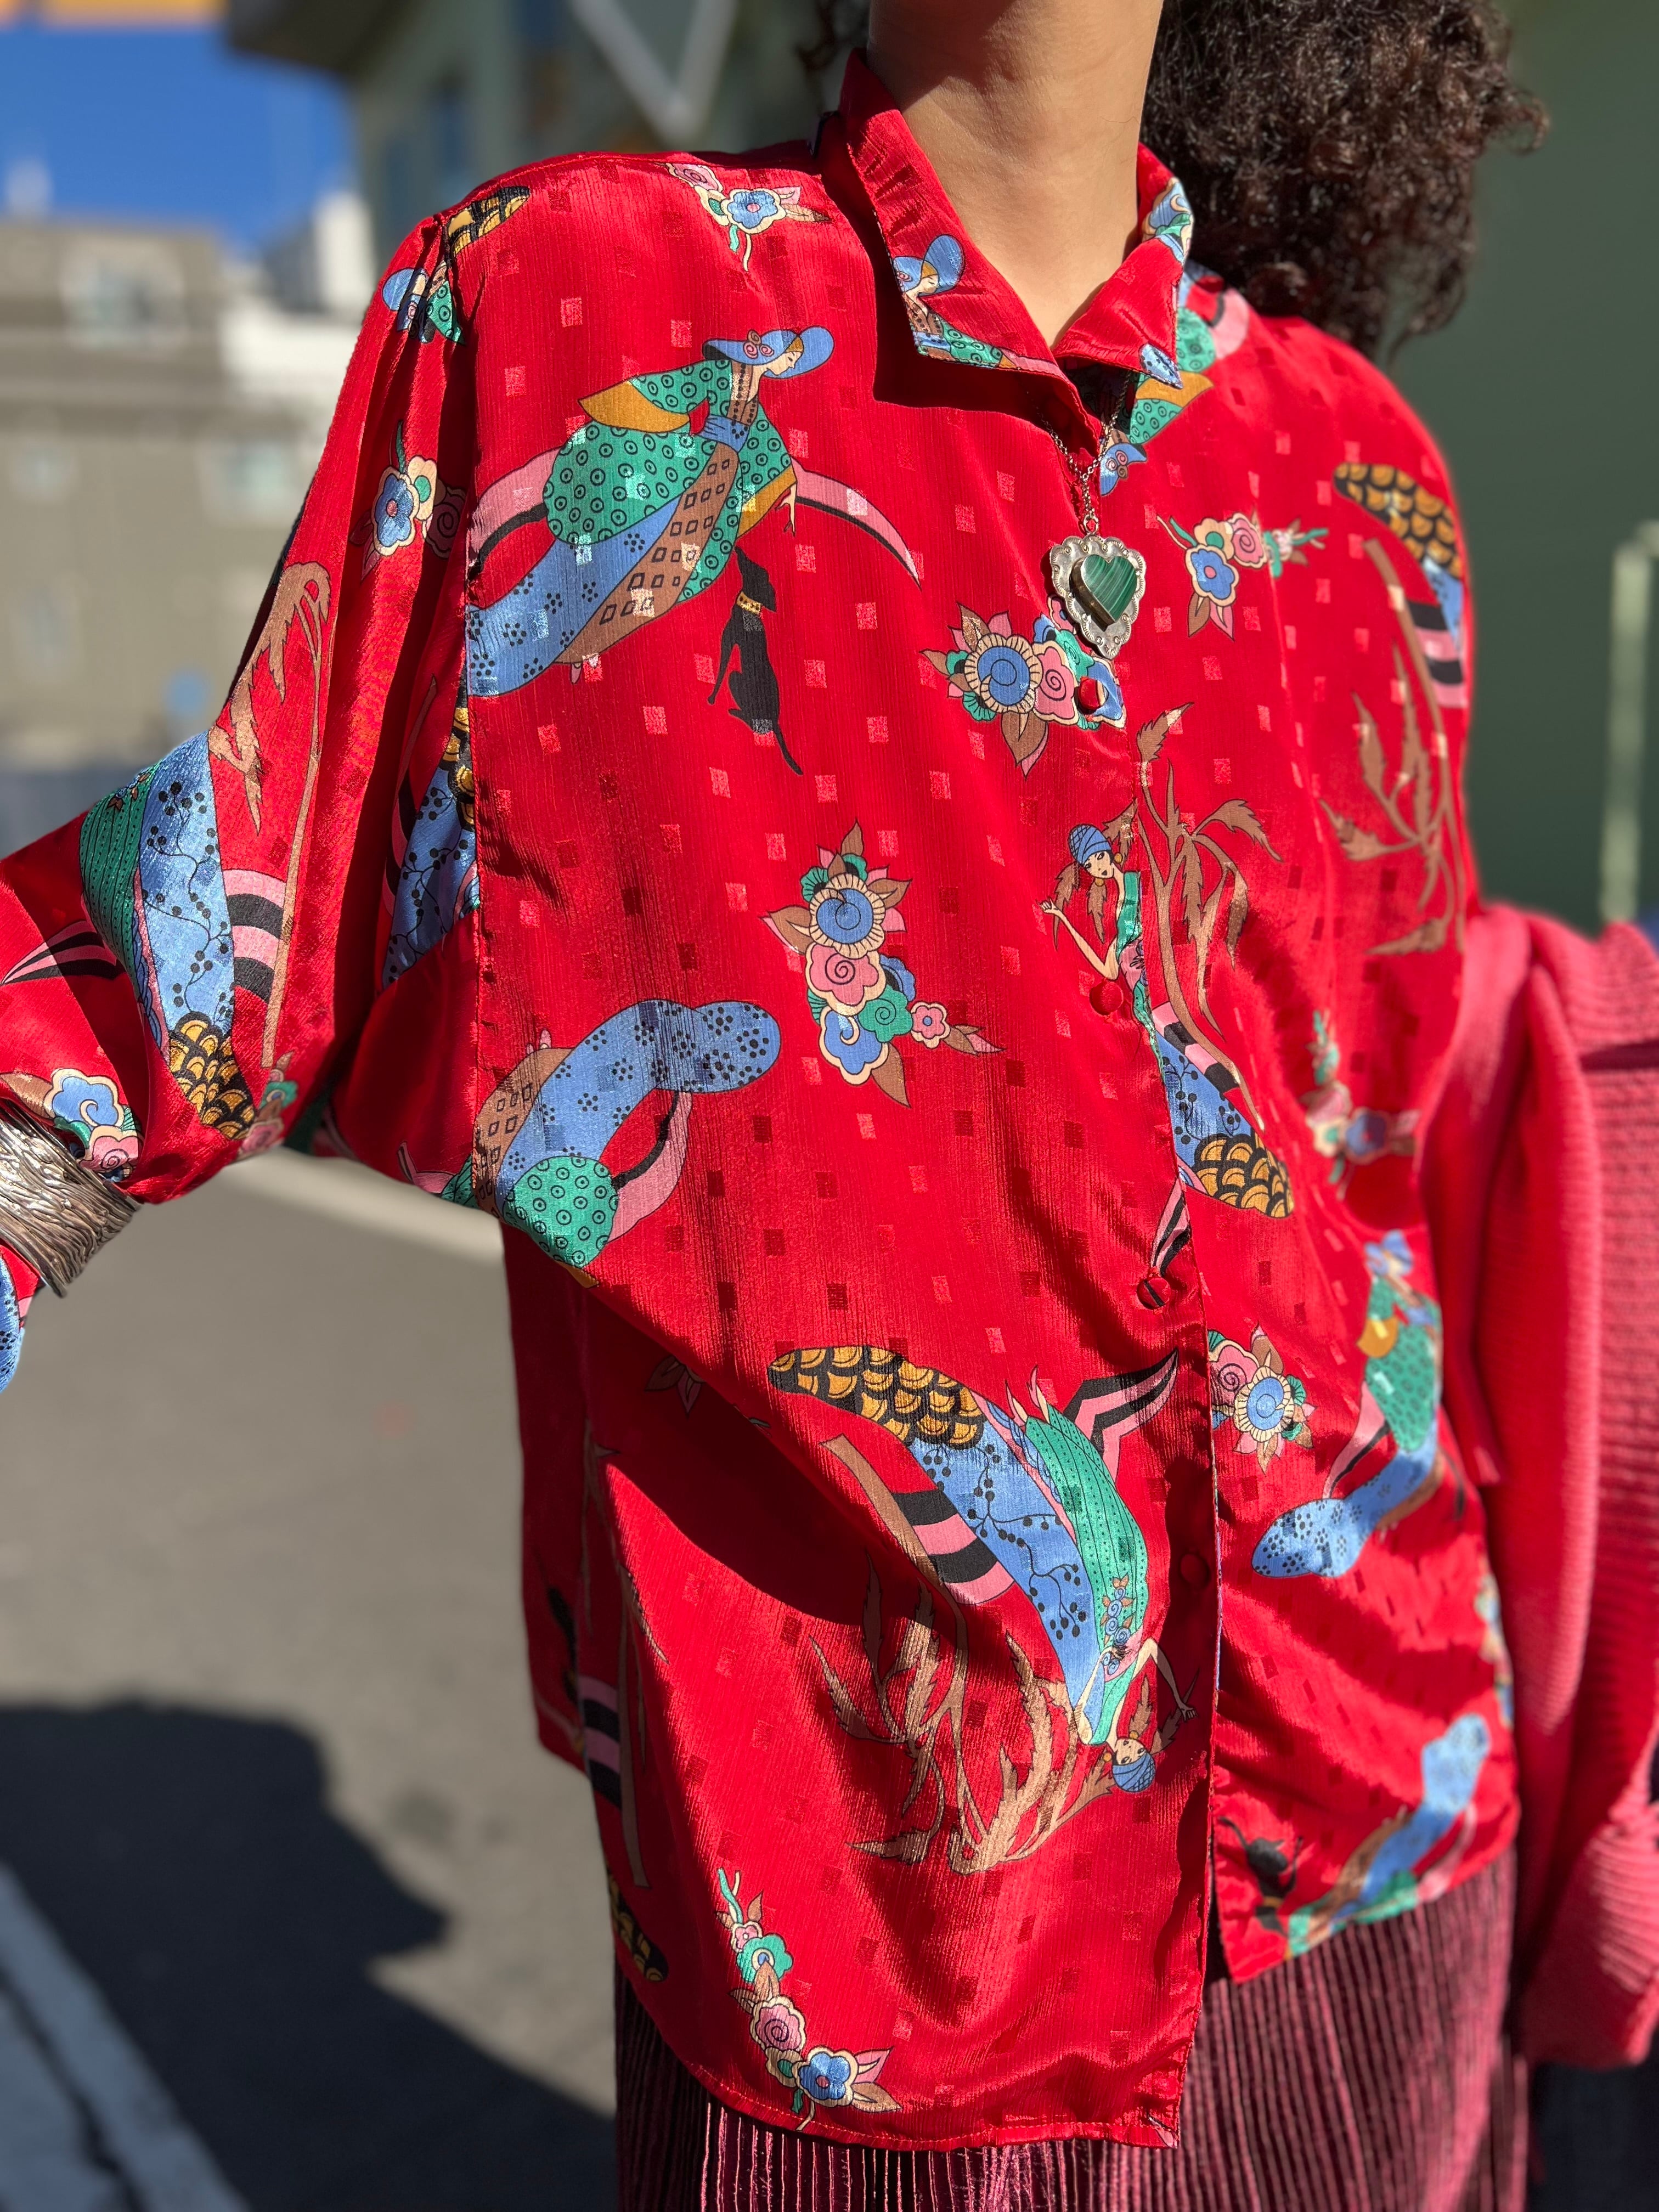 Vintage Diane von Furstenberg red people shirt ( ヴィンテージ ダイアンフォンファステンバーグ レッド  人物柄シャツ ) | Riyad vintage shop powered by BASE